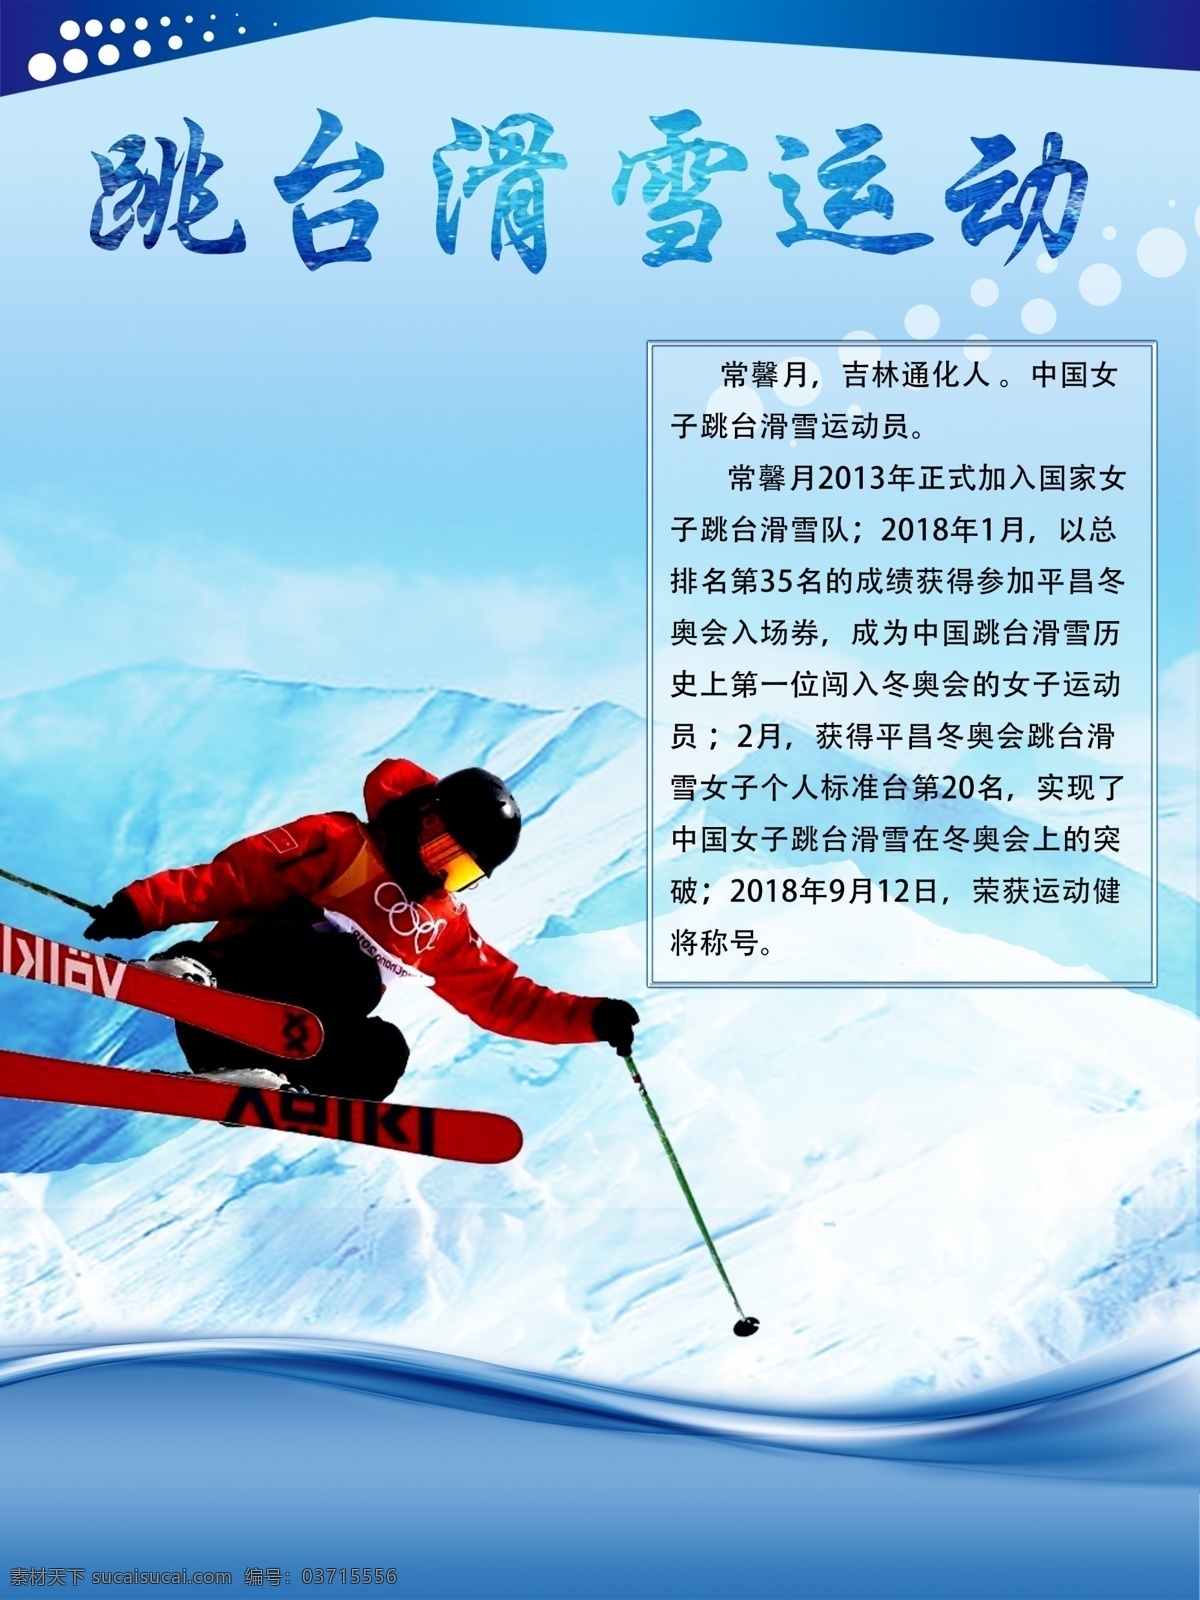 跳台滑雪运动 冬季滑雪 跳台滑雪项目 滑雪 体育运动 体育项目